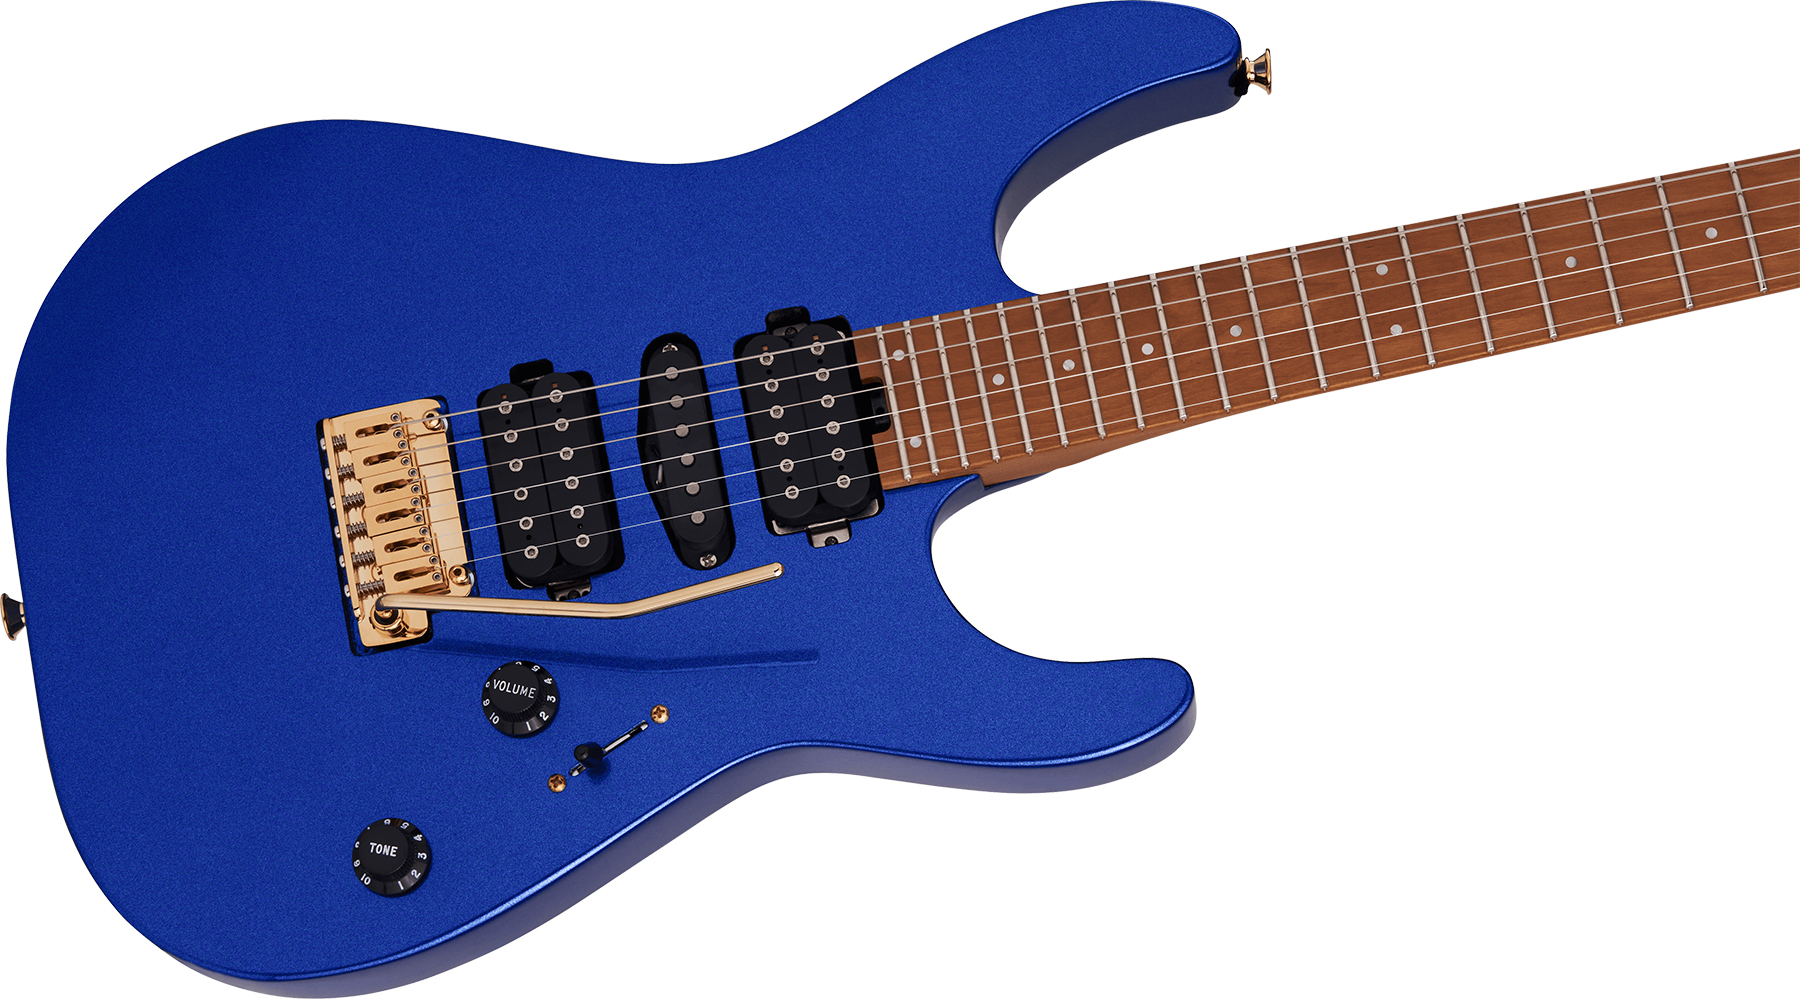 Charvel Dinky Dk24 Hsh 2pt Cm Pro-mod Seymour Duncan Trem Mn - Mystic Blue - E-Gitarre in Str-Form - Variation 2